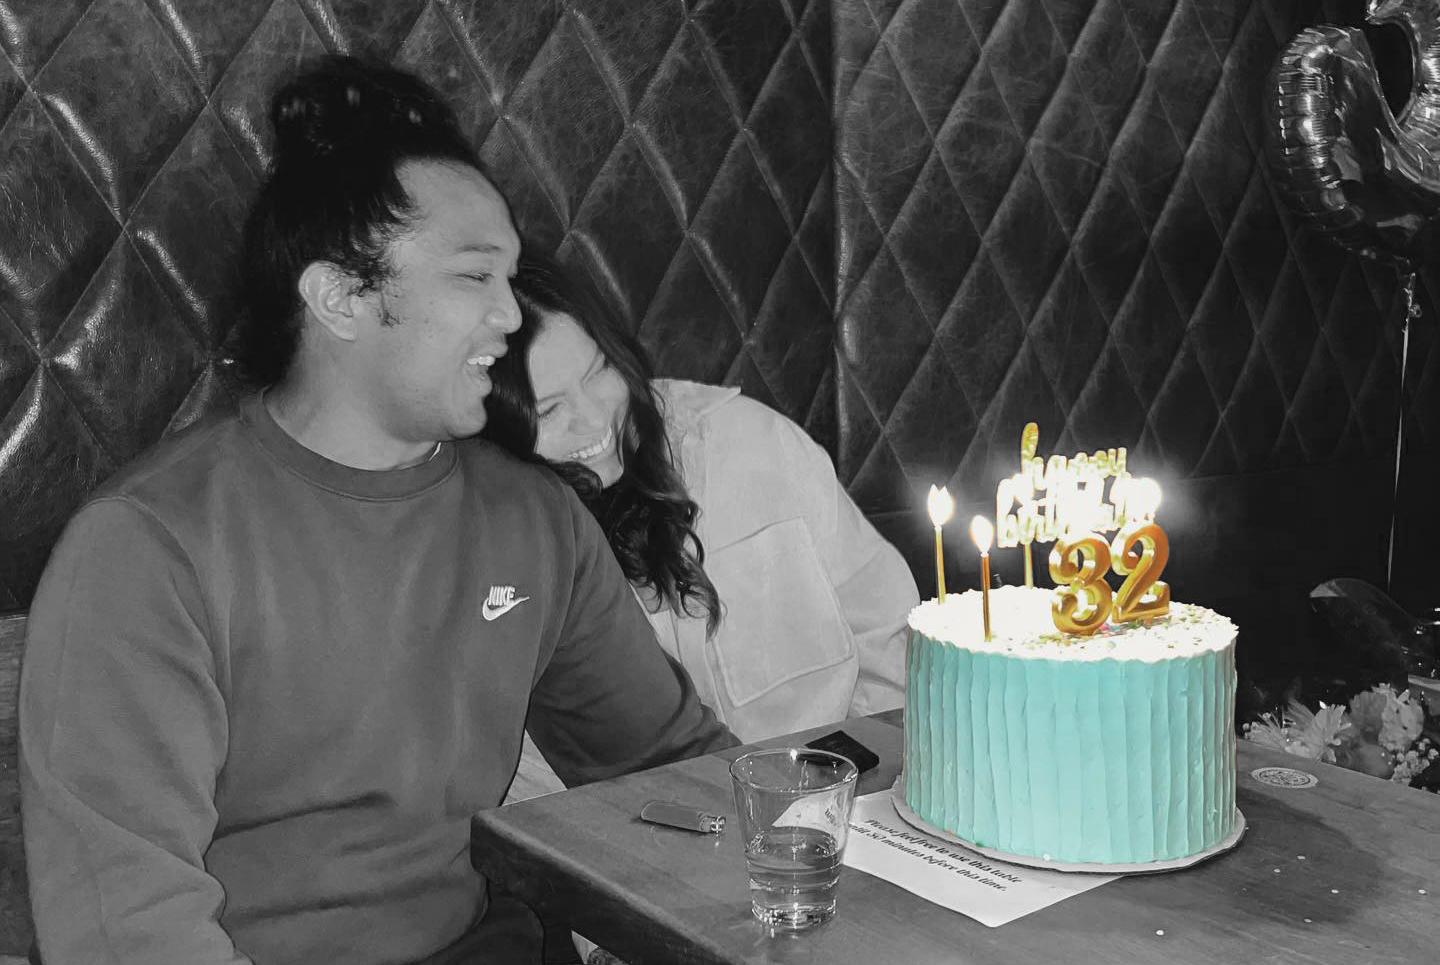 Couple Celebrating birthday with Celebration Cake